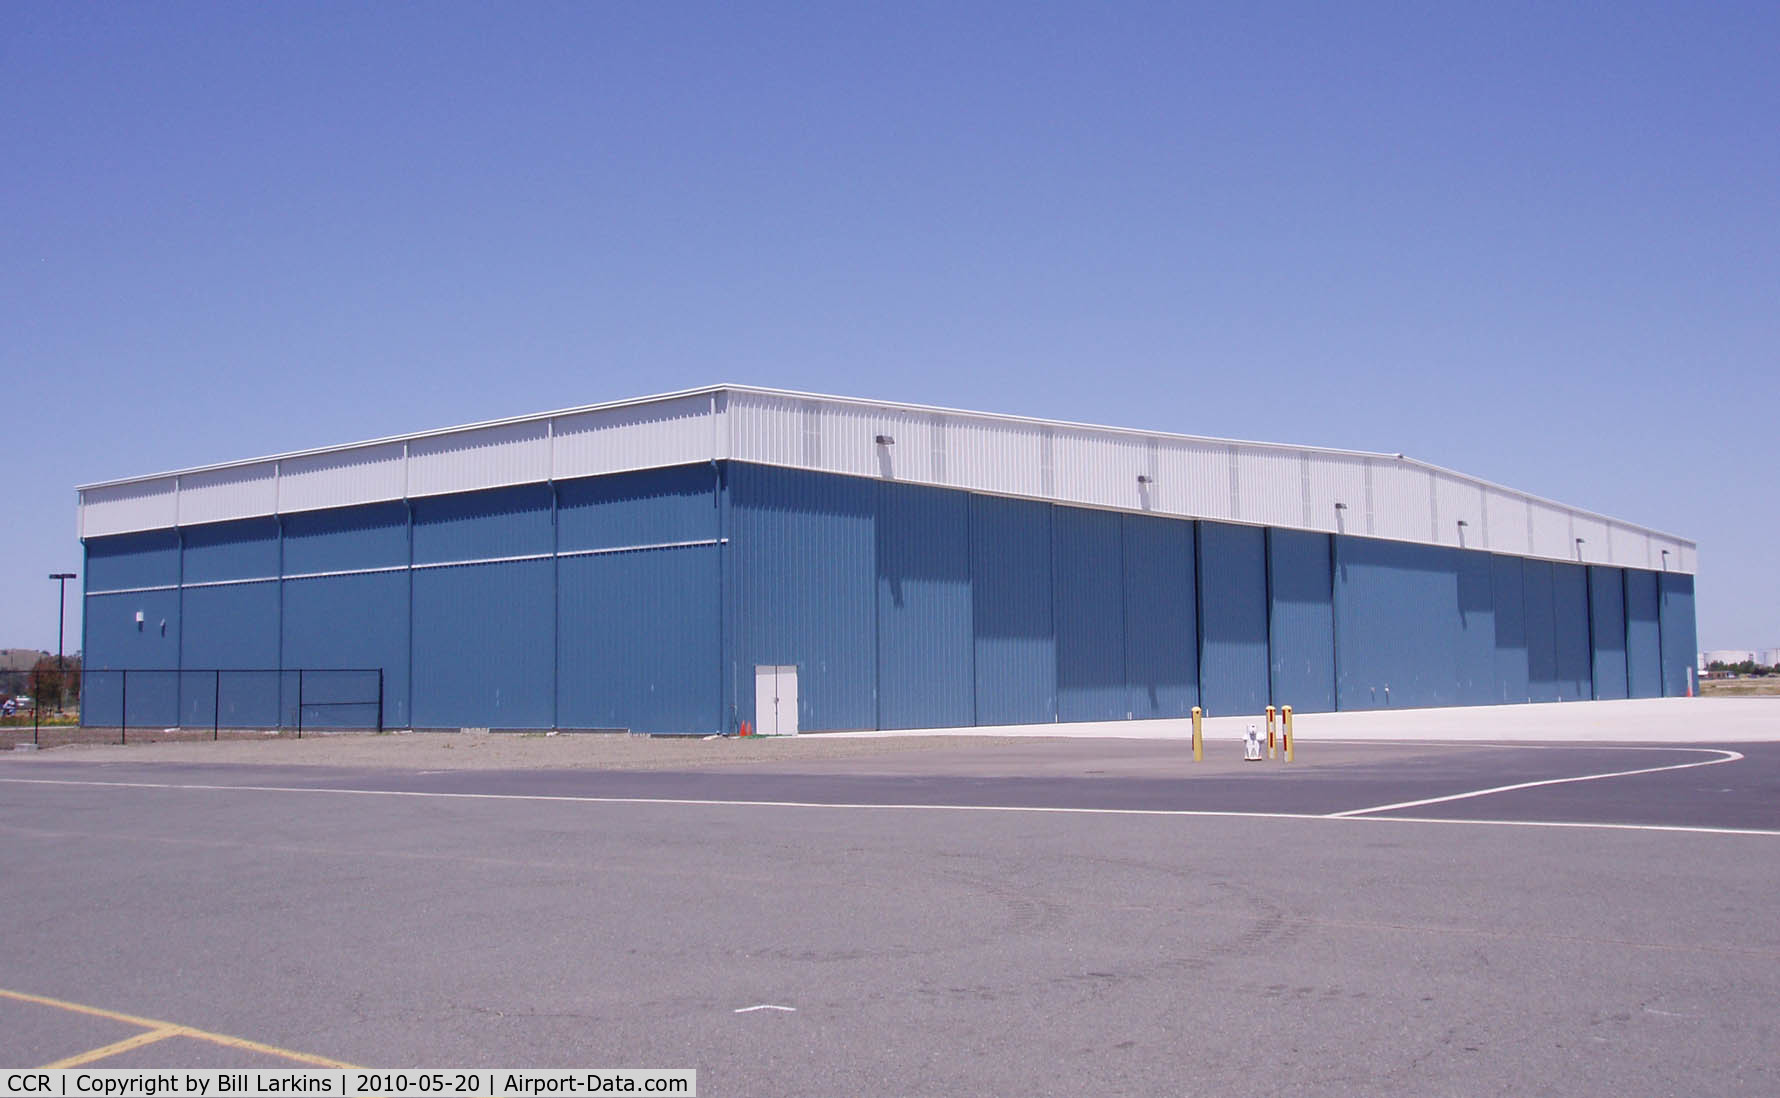 Buchanan Field Airport (CCR) - New hangar